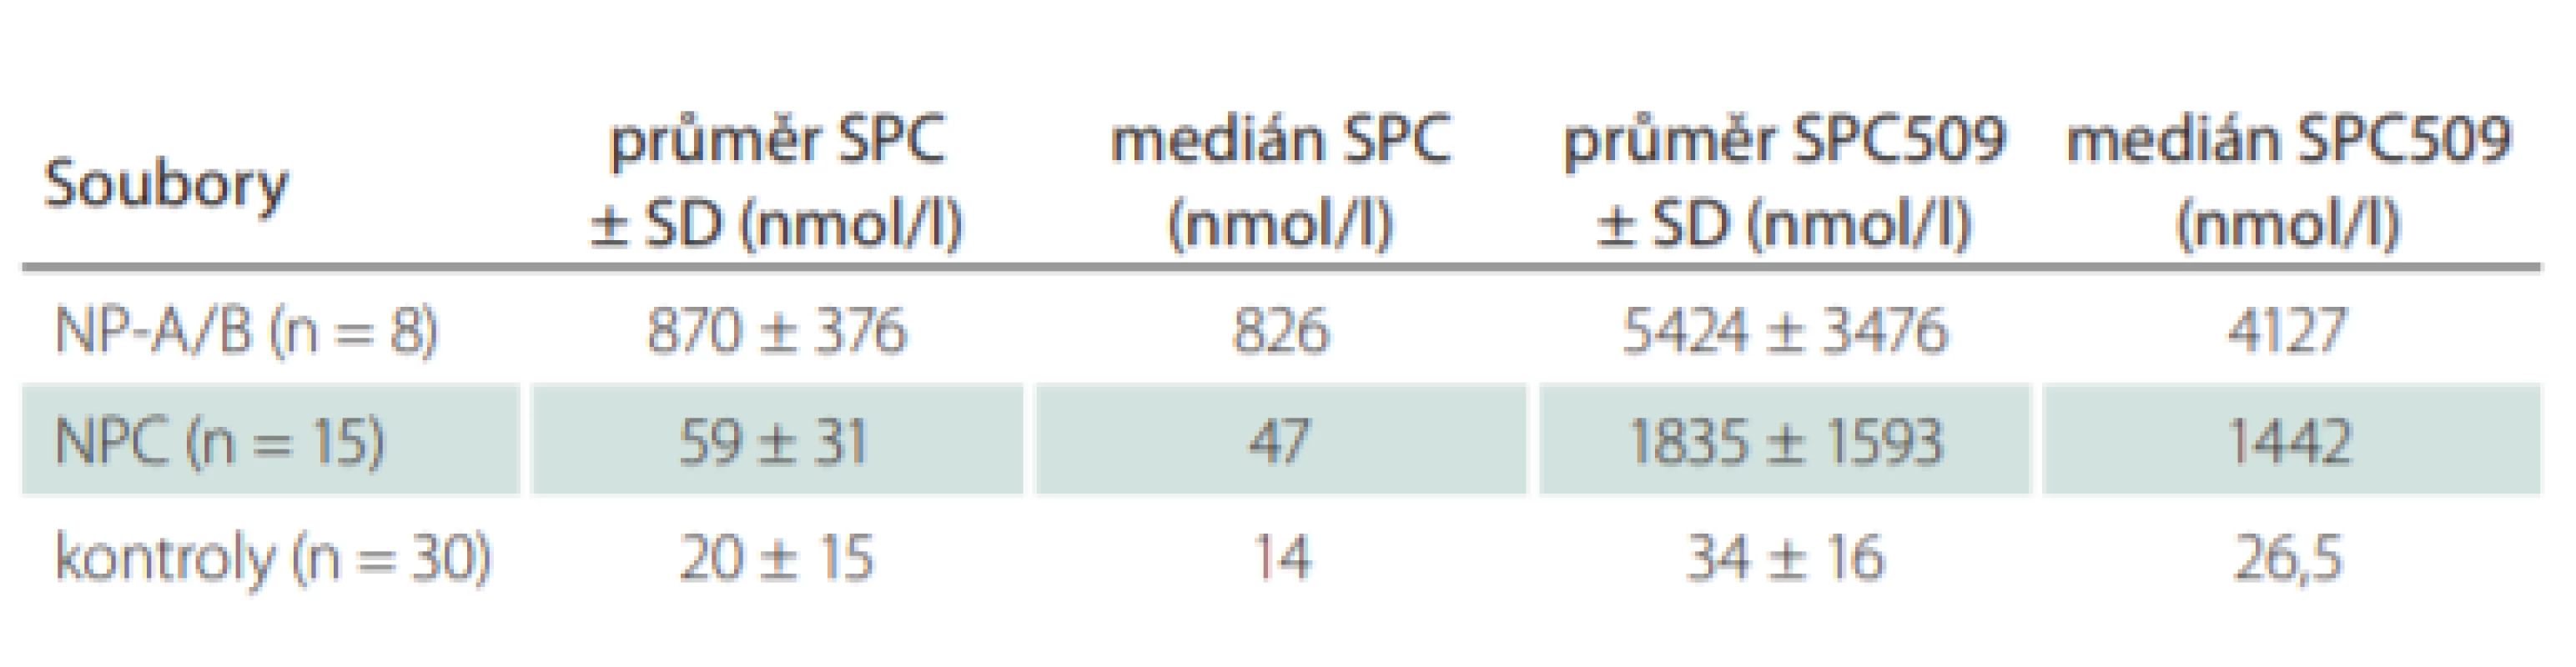 Stanovení biomarkerů SPC a SPC509 v plazmě u pacientů s NP-C, NP-A/B
a kontrol. 